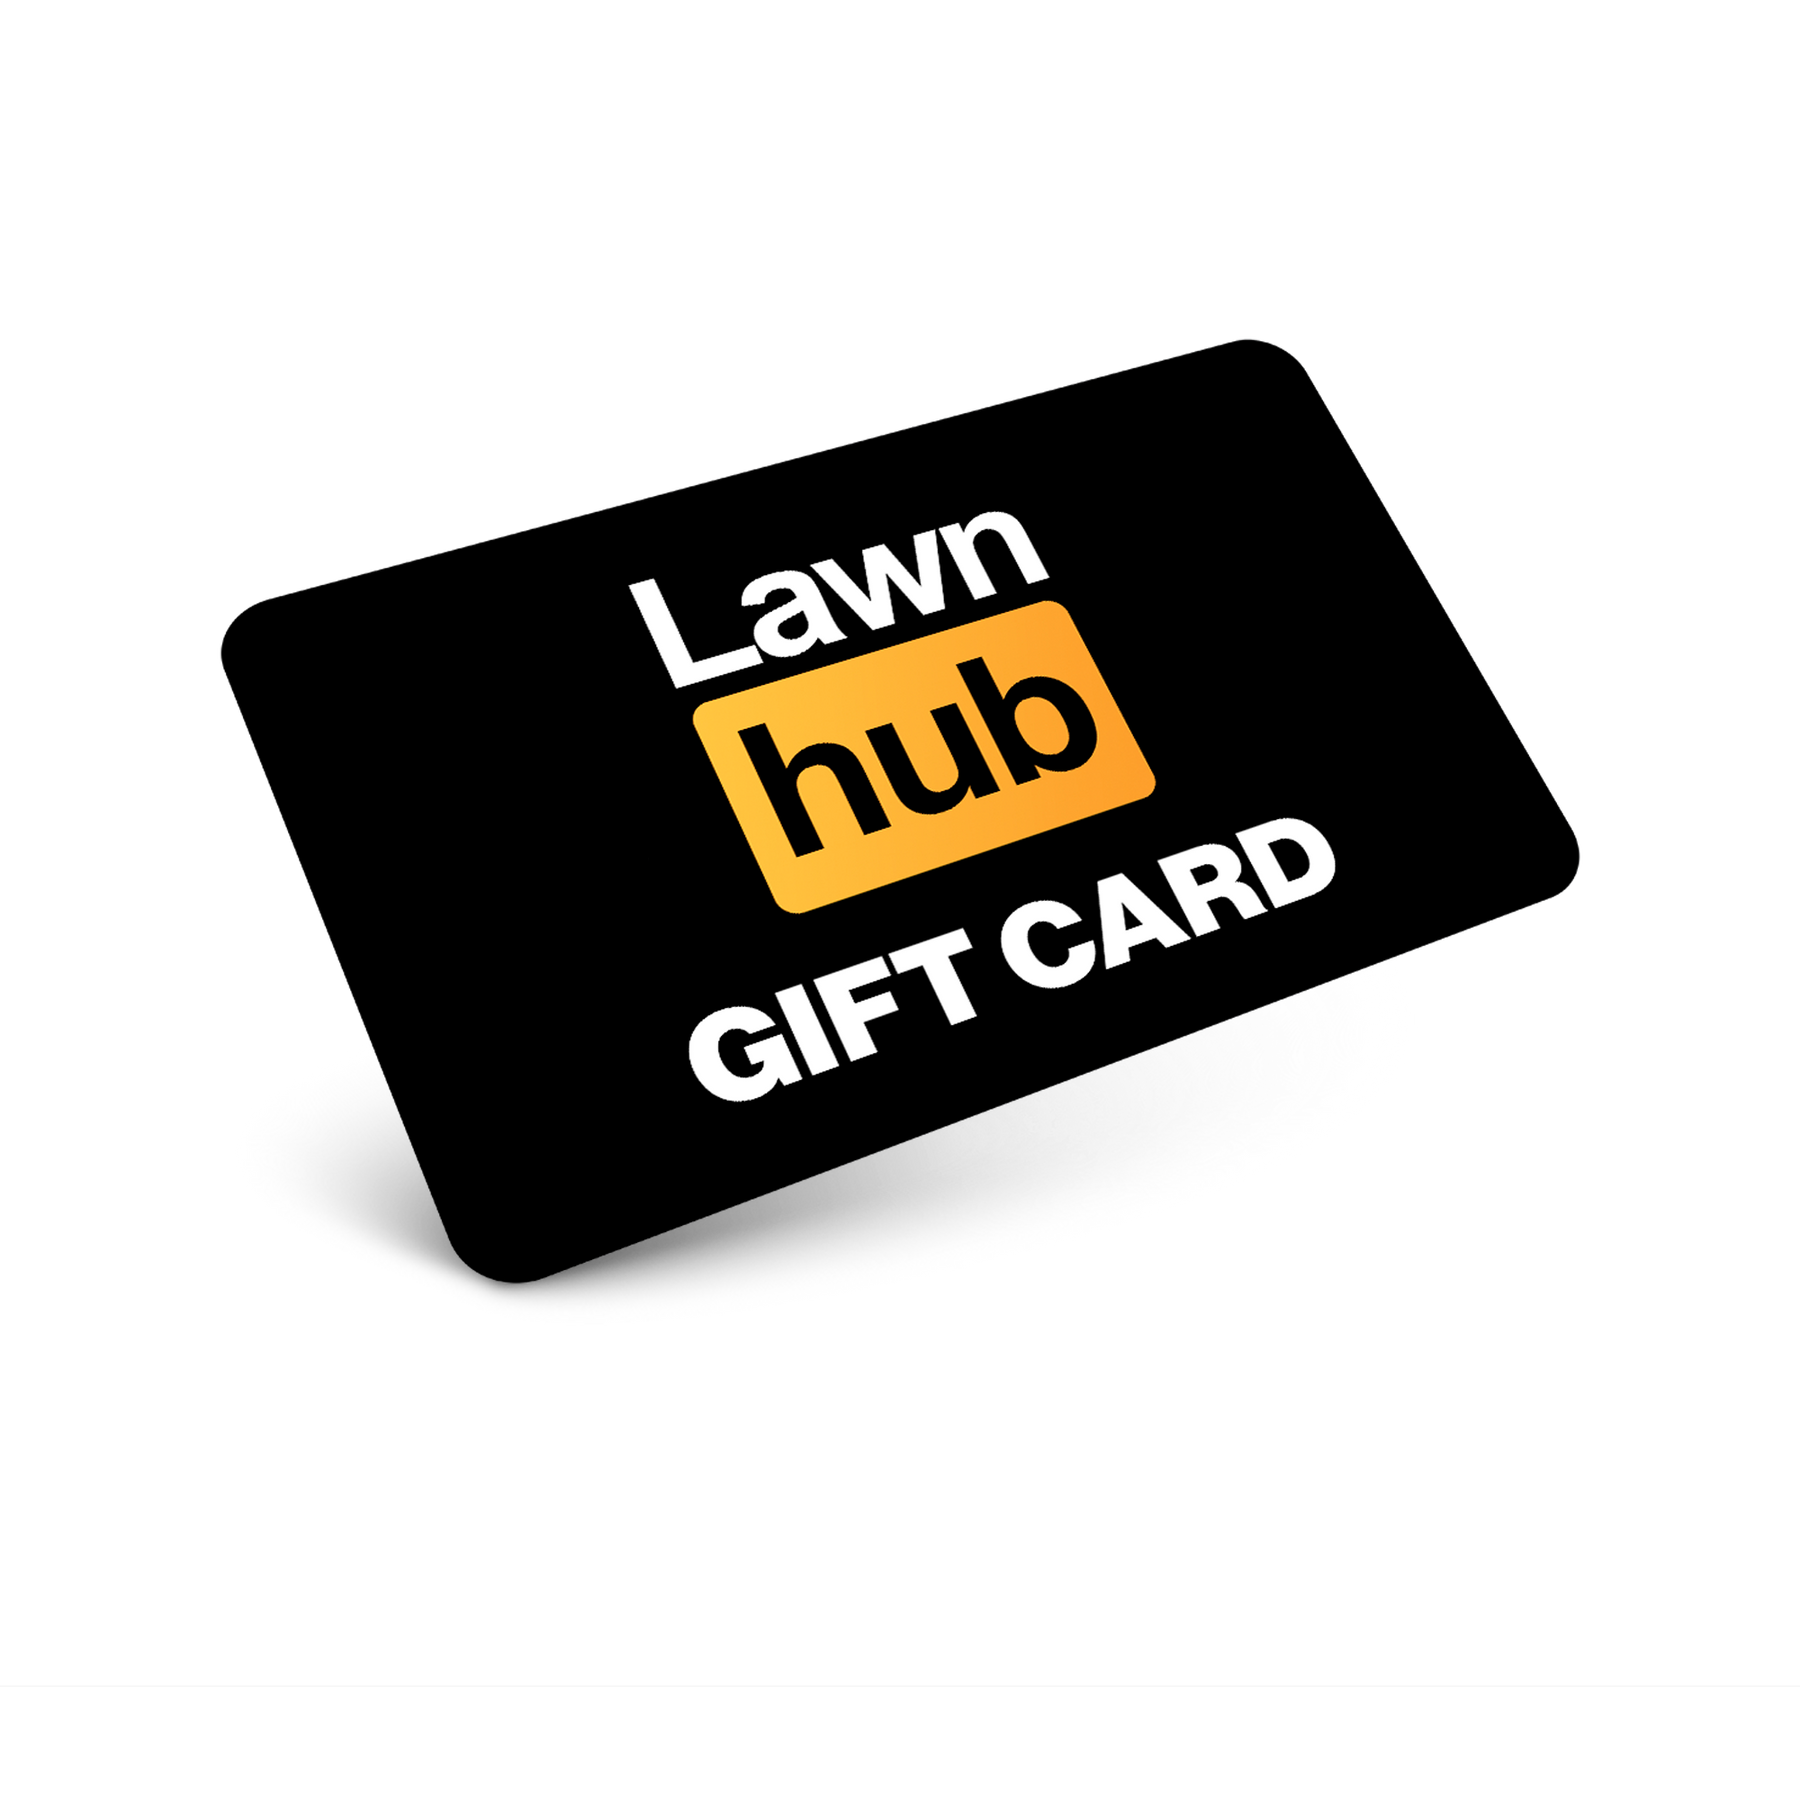 Gift Card - Lawnhub